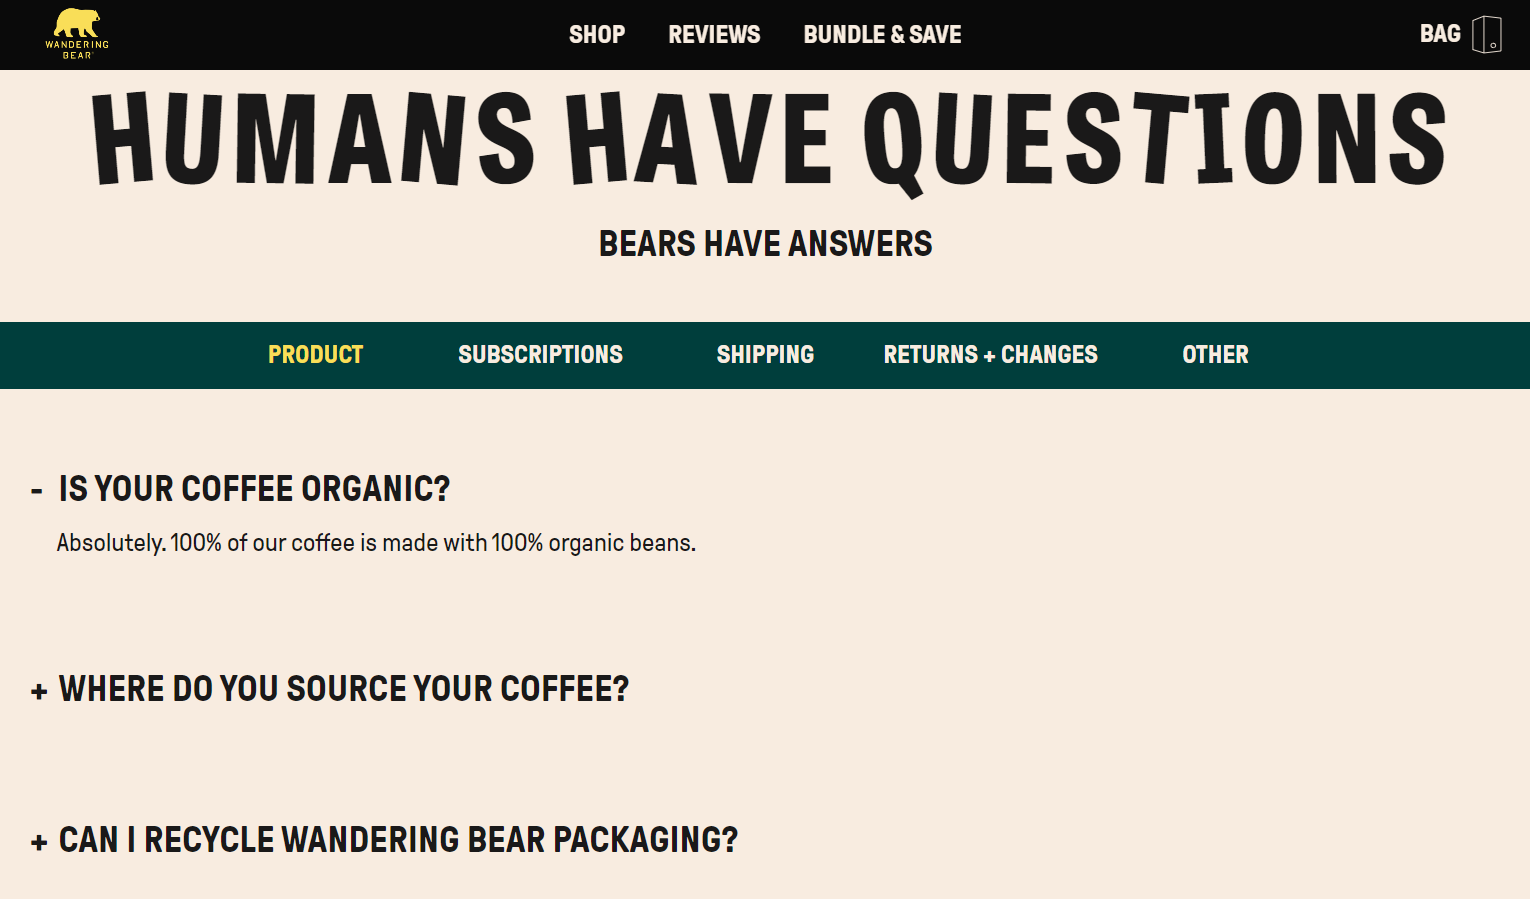 Strona FAQ firmy Wandering Bear wyróżnia się luźnym stylem komunikacji